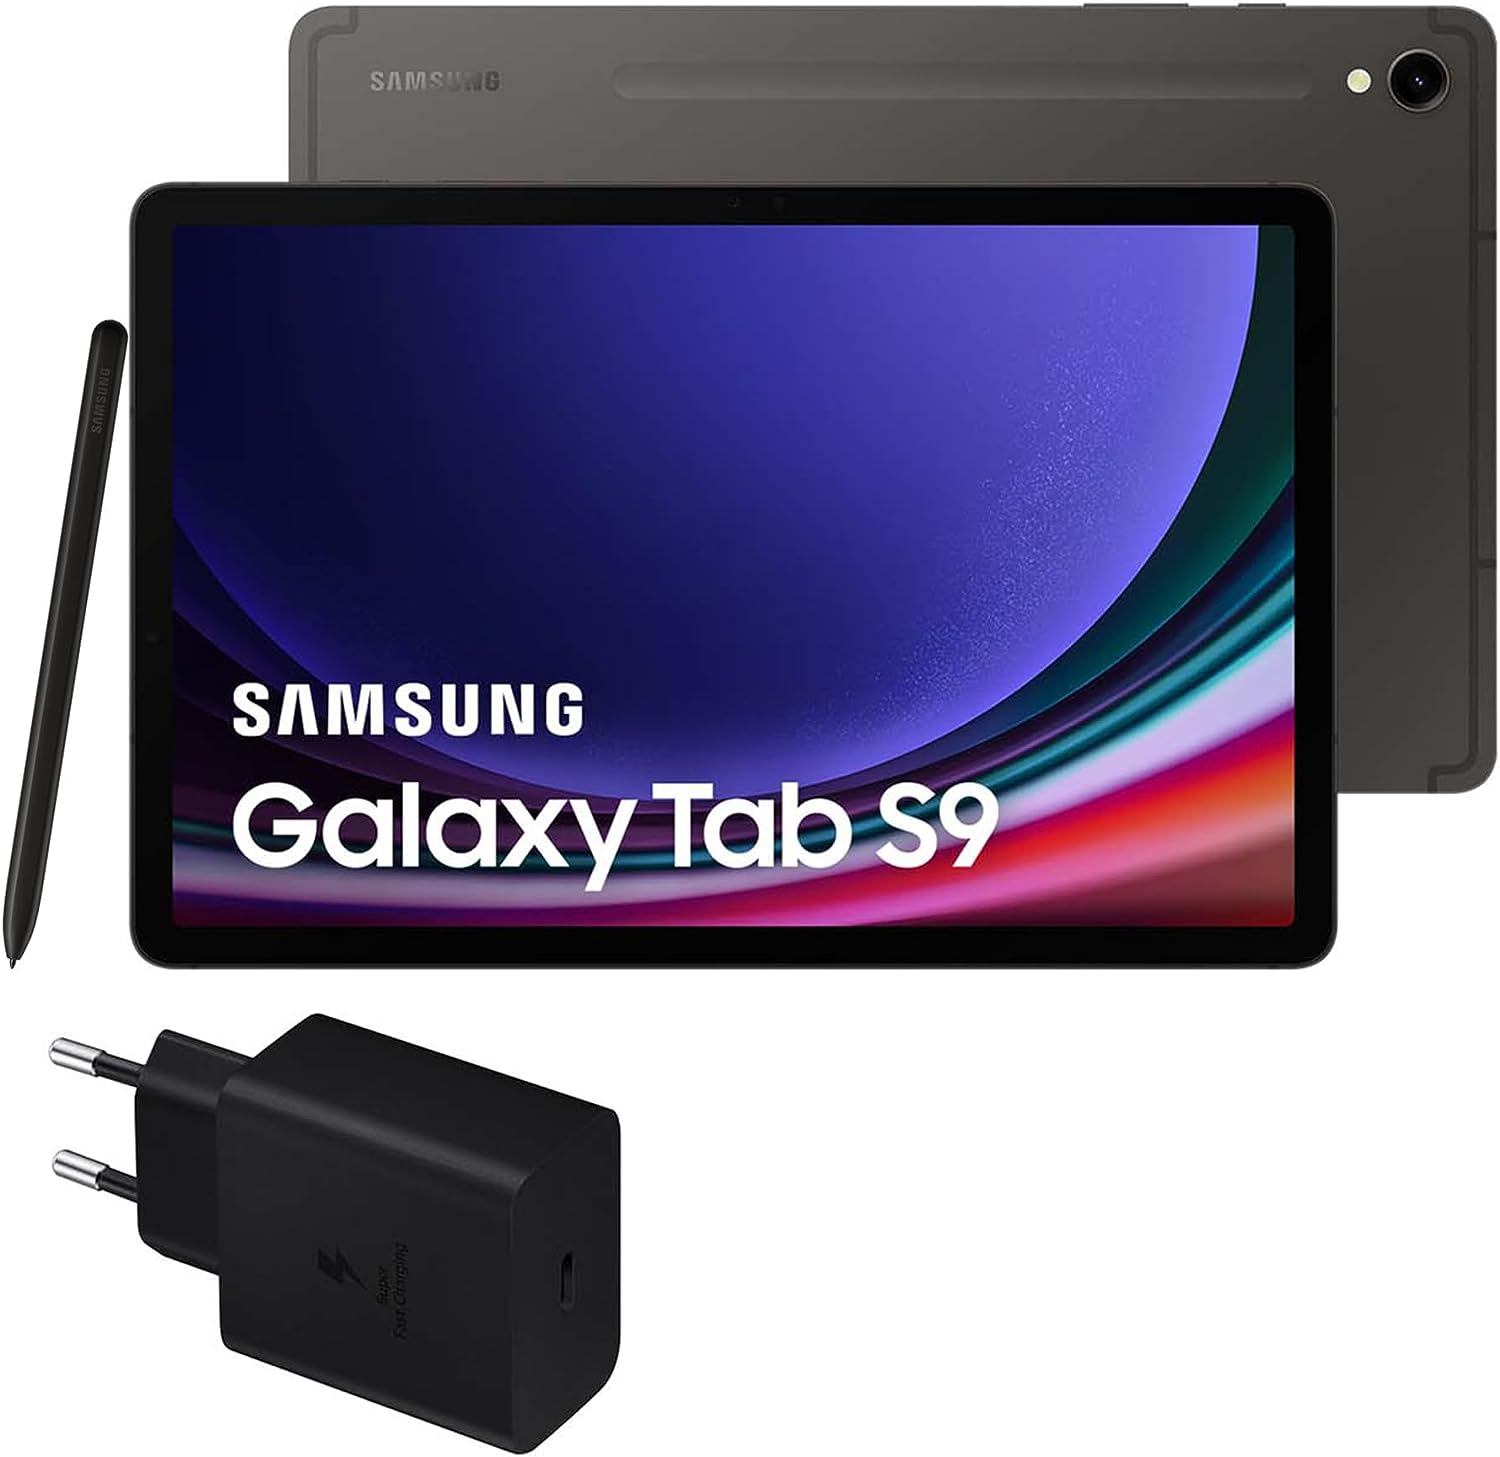 Samsung Galaxy Tab S9 versus Samsung Galaxy Tab S8